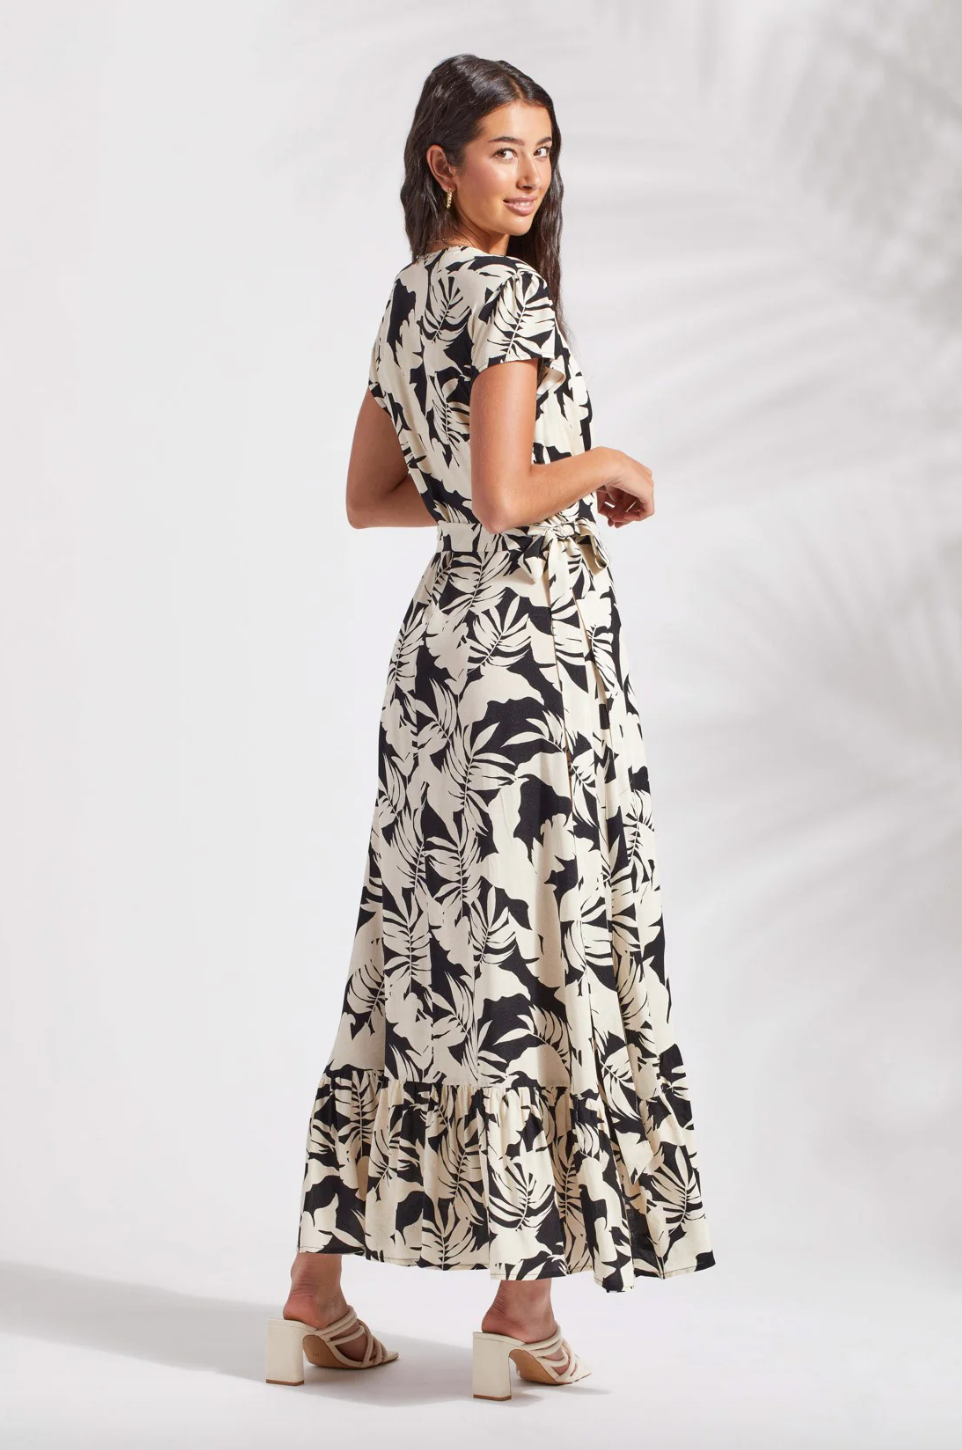 TRBL Printed Maxi Dress